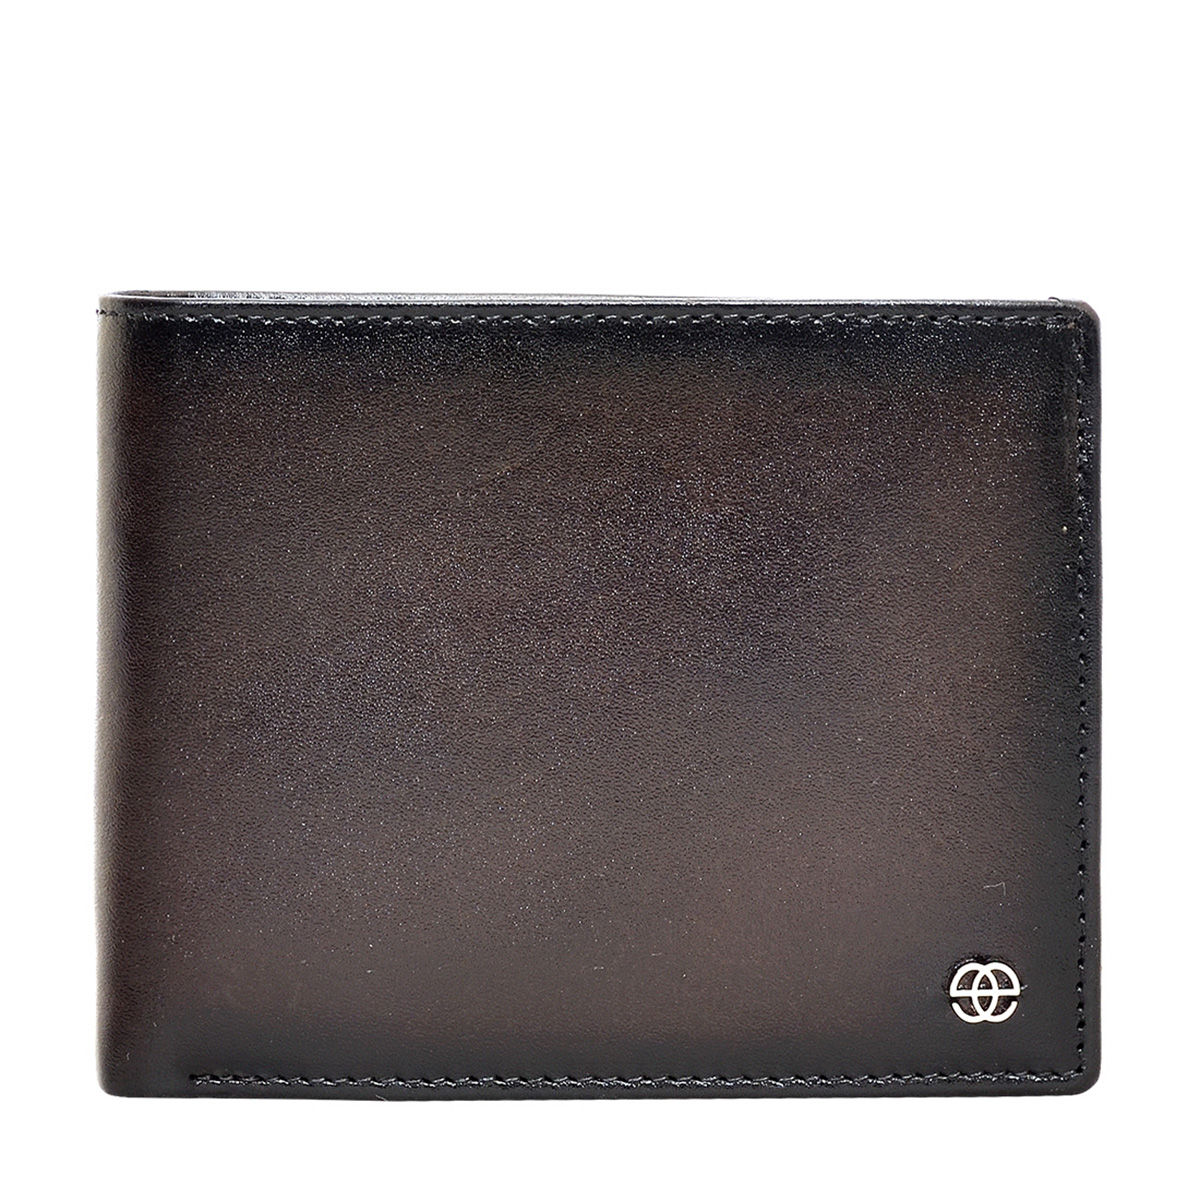 Eske Paris Ingrid Bi-Fold Genuine Leather Men's Wallet, Dark Brown